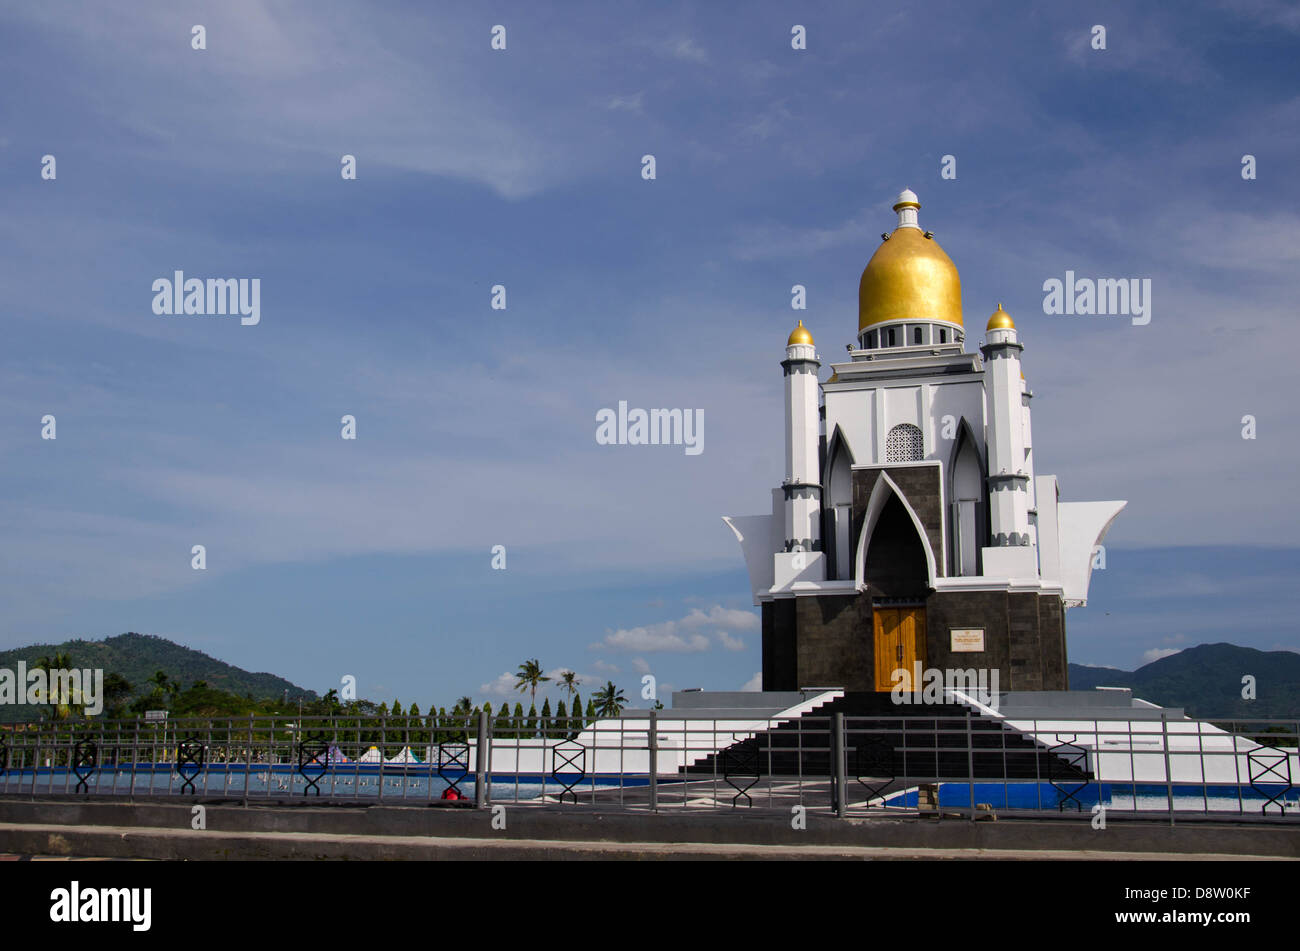 Monumen at Mataram Stock Photo